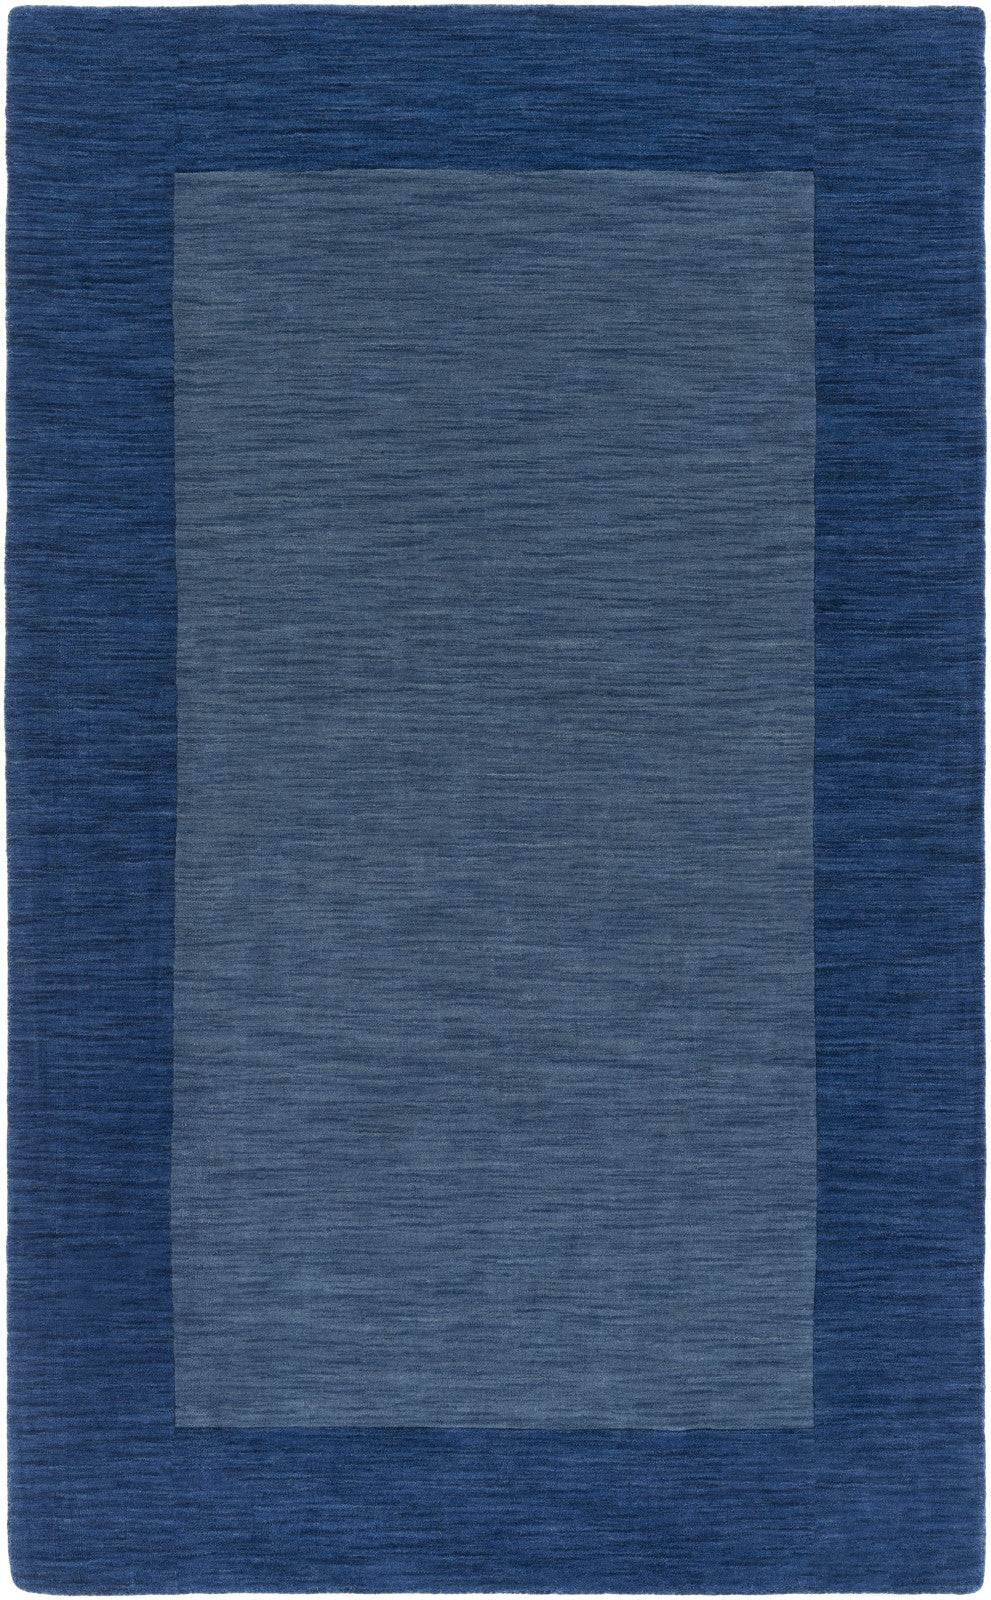 Artistic Weavers Piedmont Park Francis Royal Blue/Denim Blue Area Rug main image